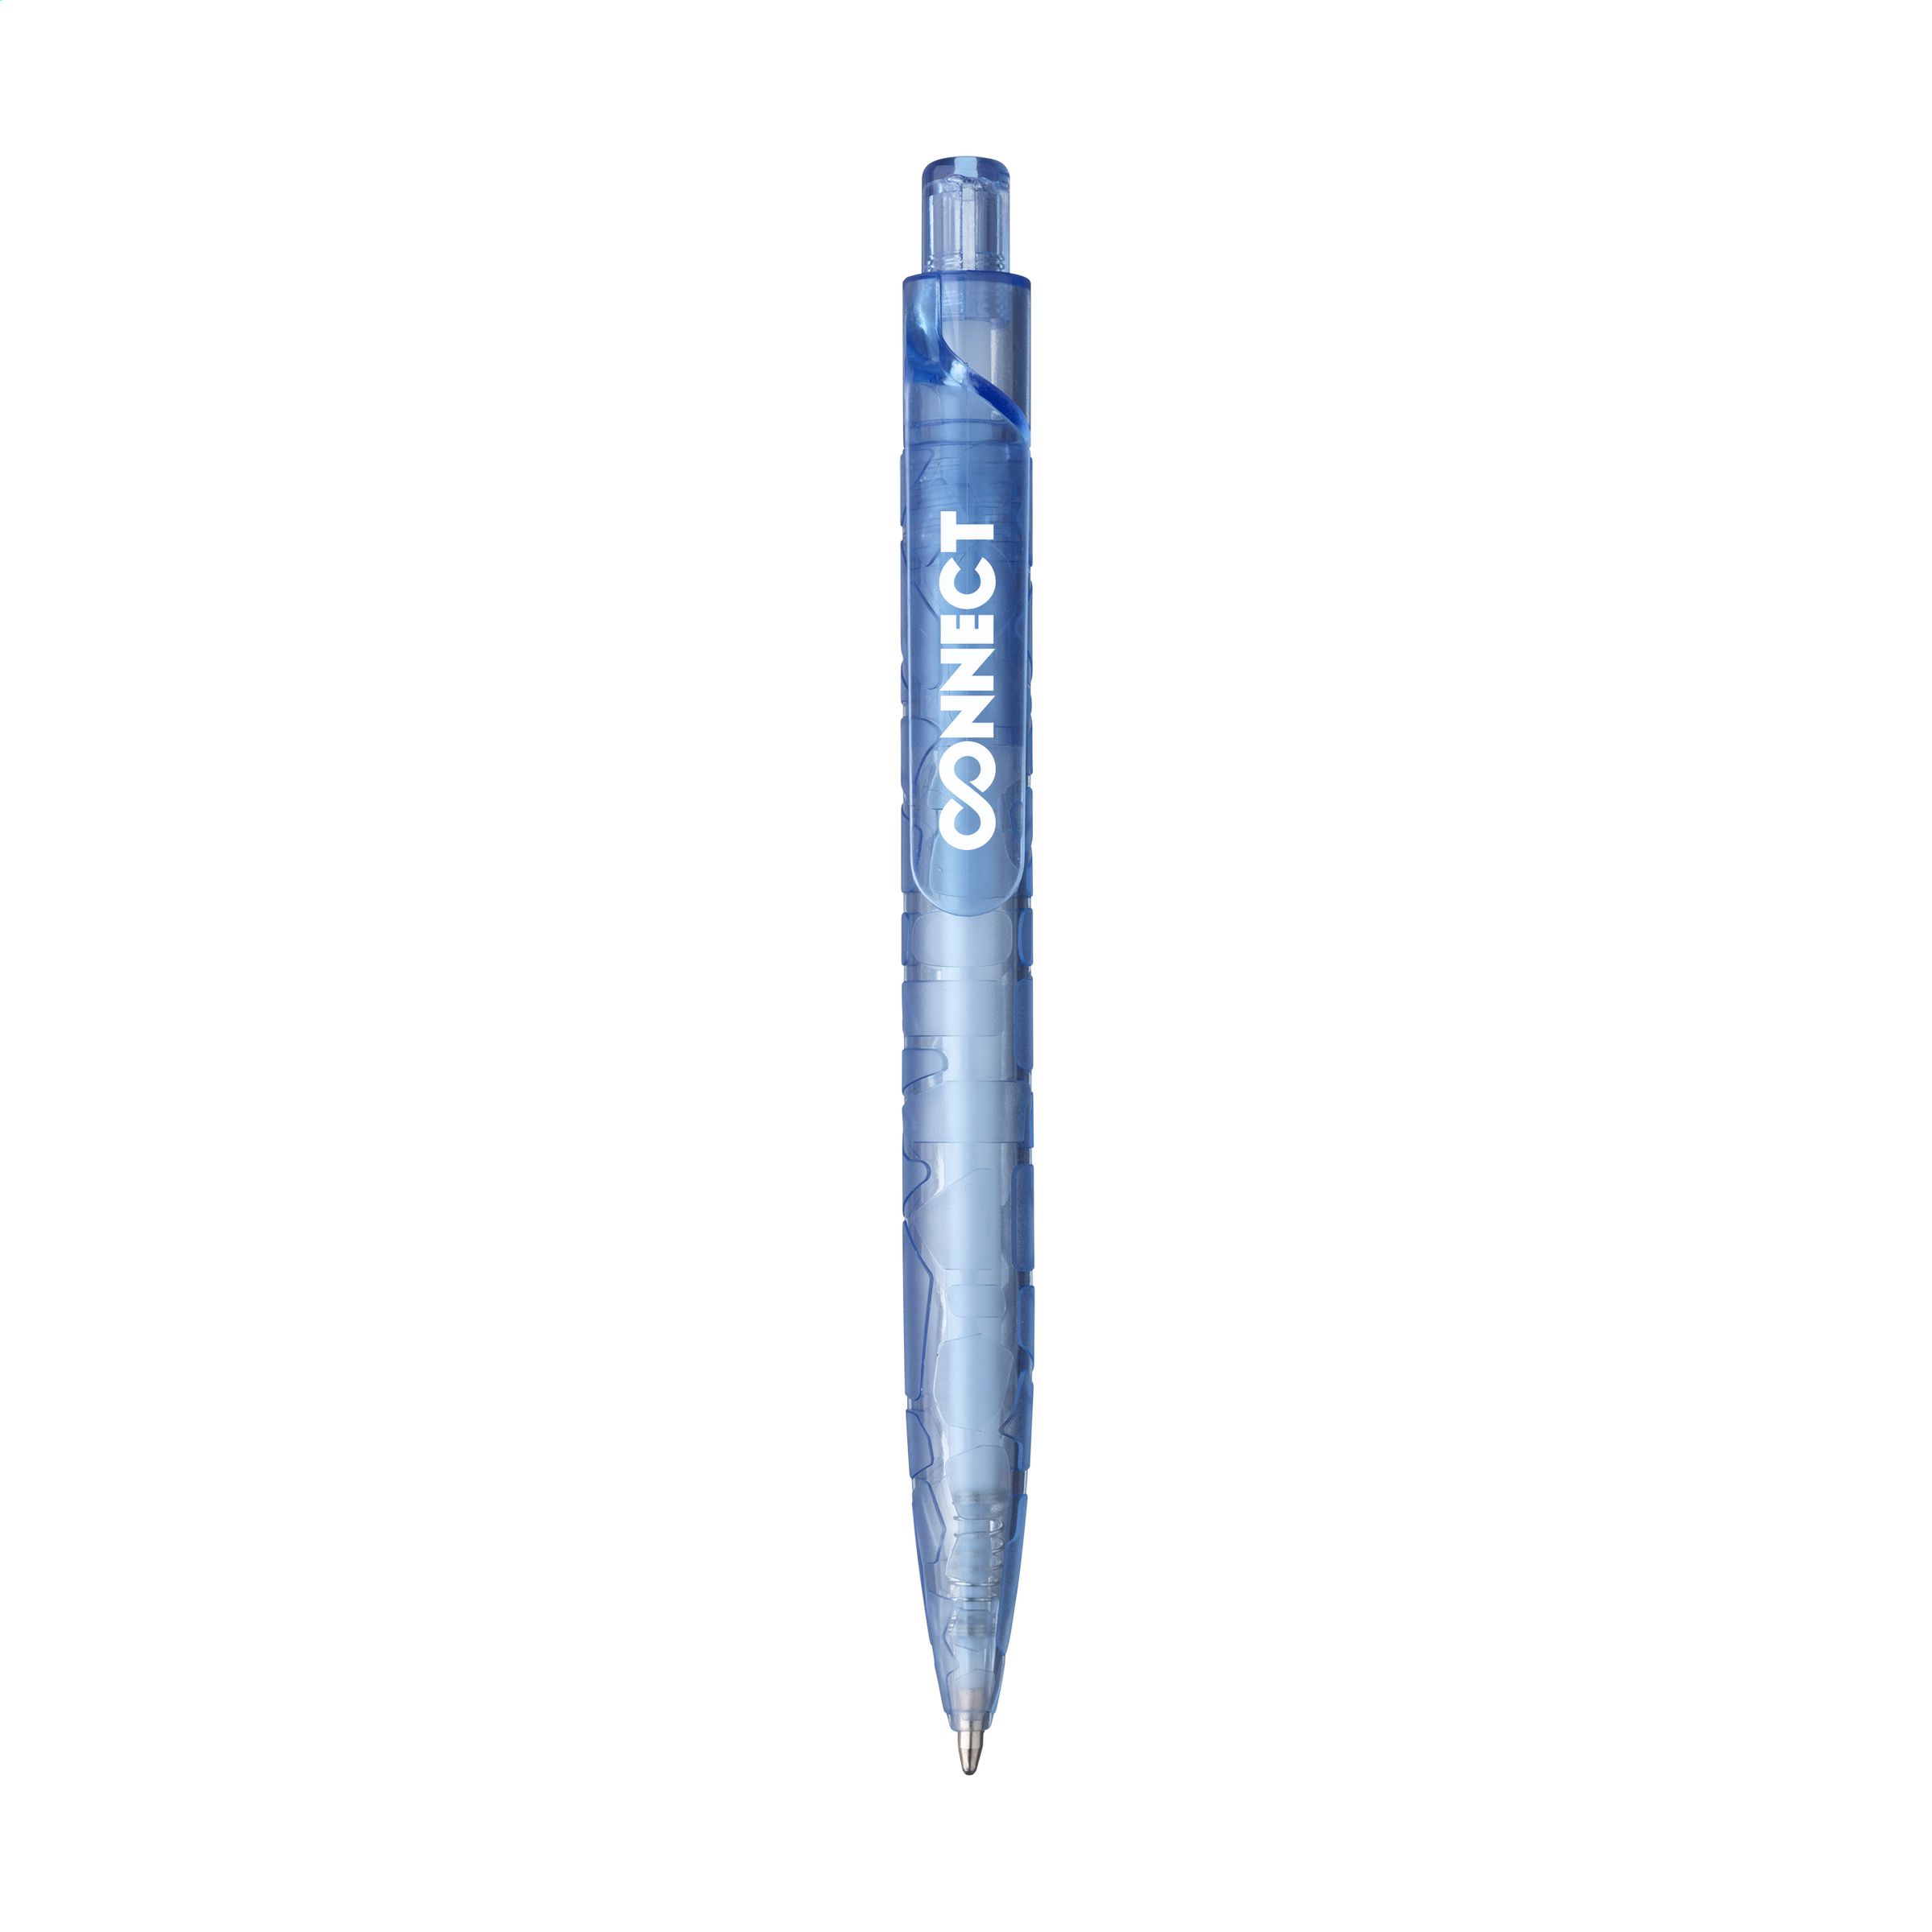 Blå blæk RPET-genbrugt kuglepen - Ry